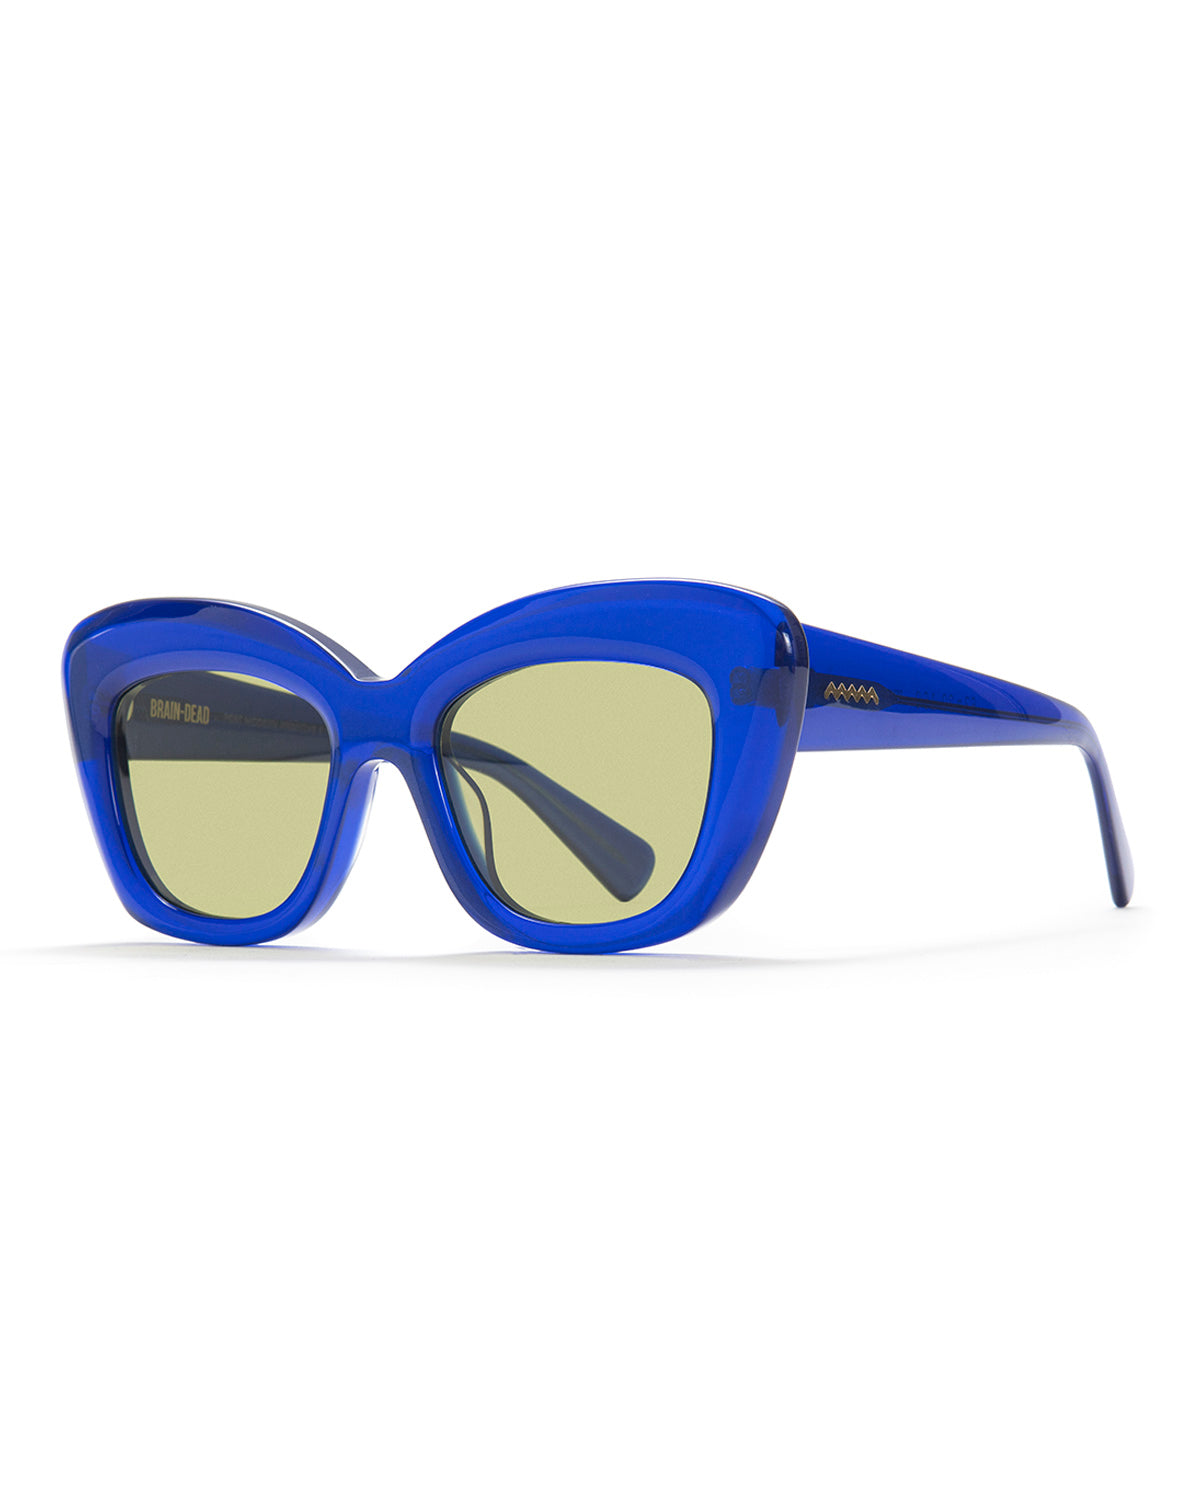 Chibi Sunglasses - Translucent Blue - Brain Dead 2